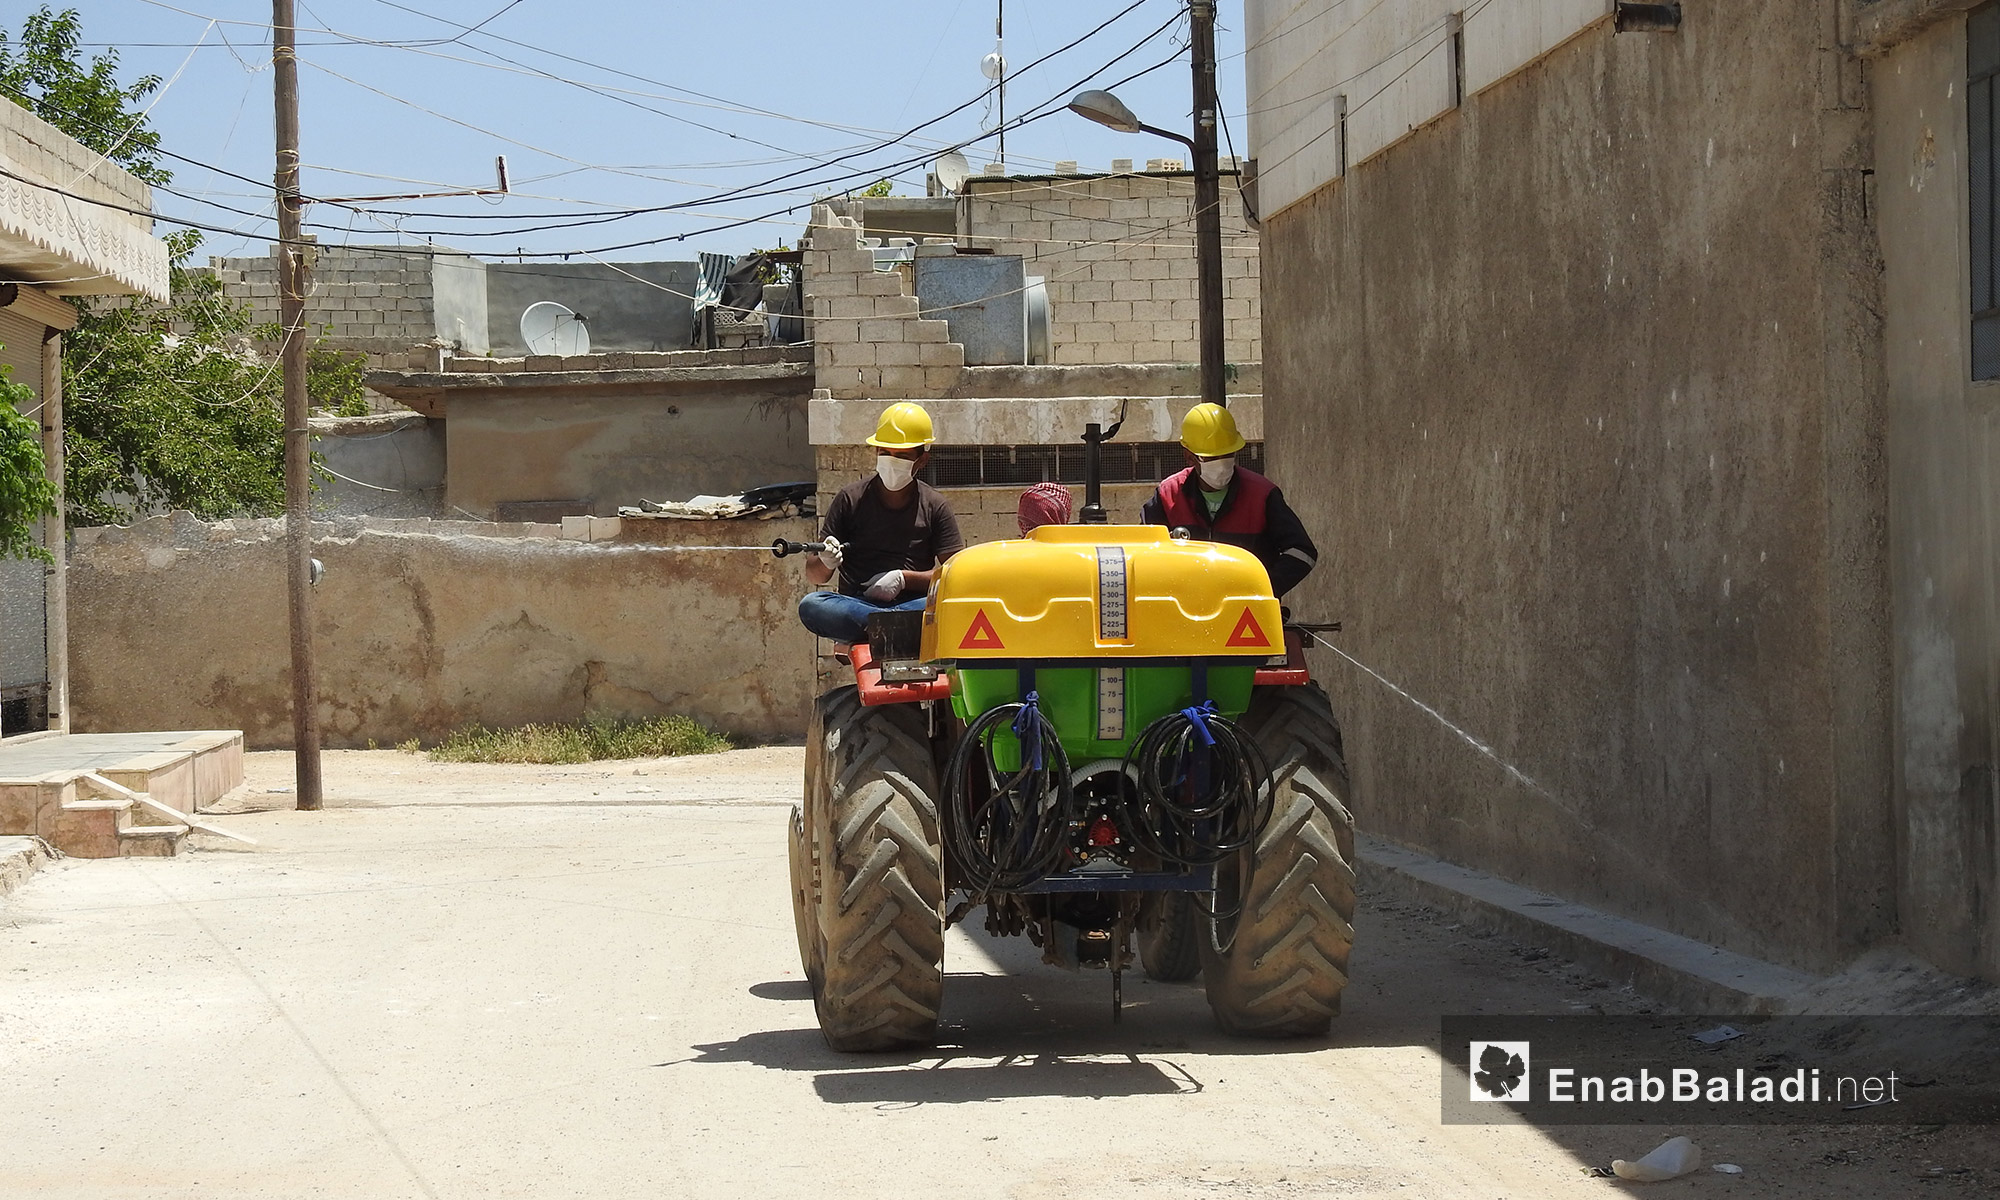 آليات مجلس بلدة صوران المحلي ترش المبيدات الحشرية في أنحاء البلدة شمال حلب  - 28 أيار 2017 (عنب بلدي)